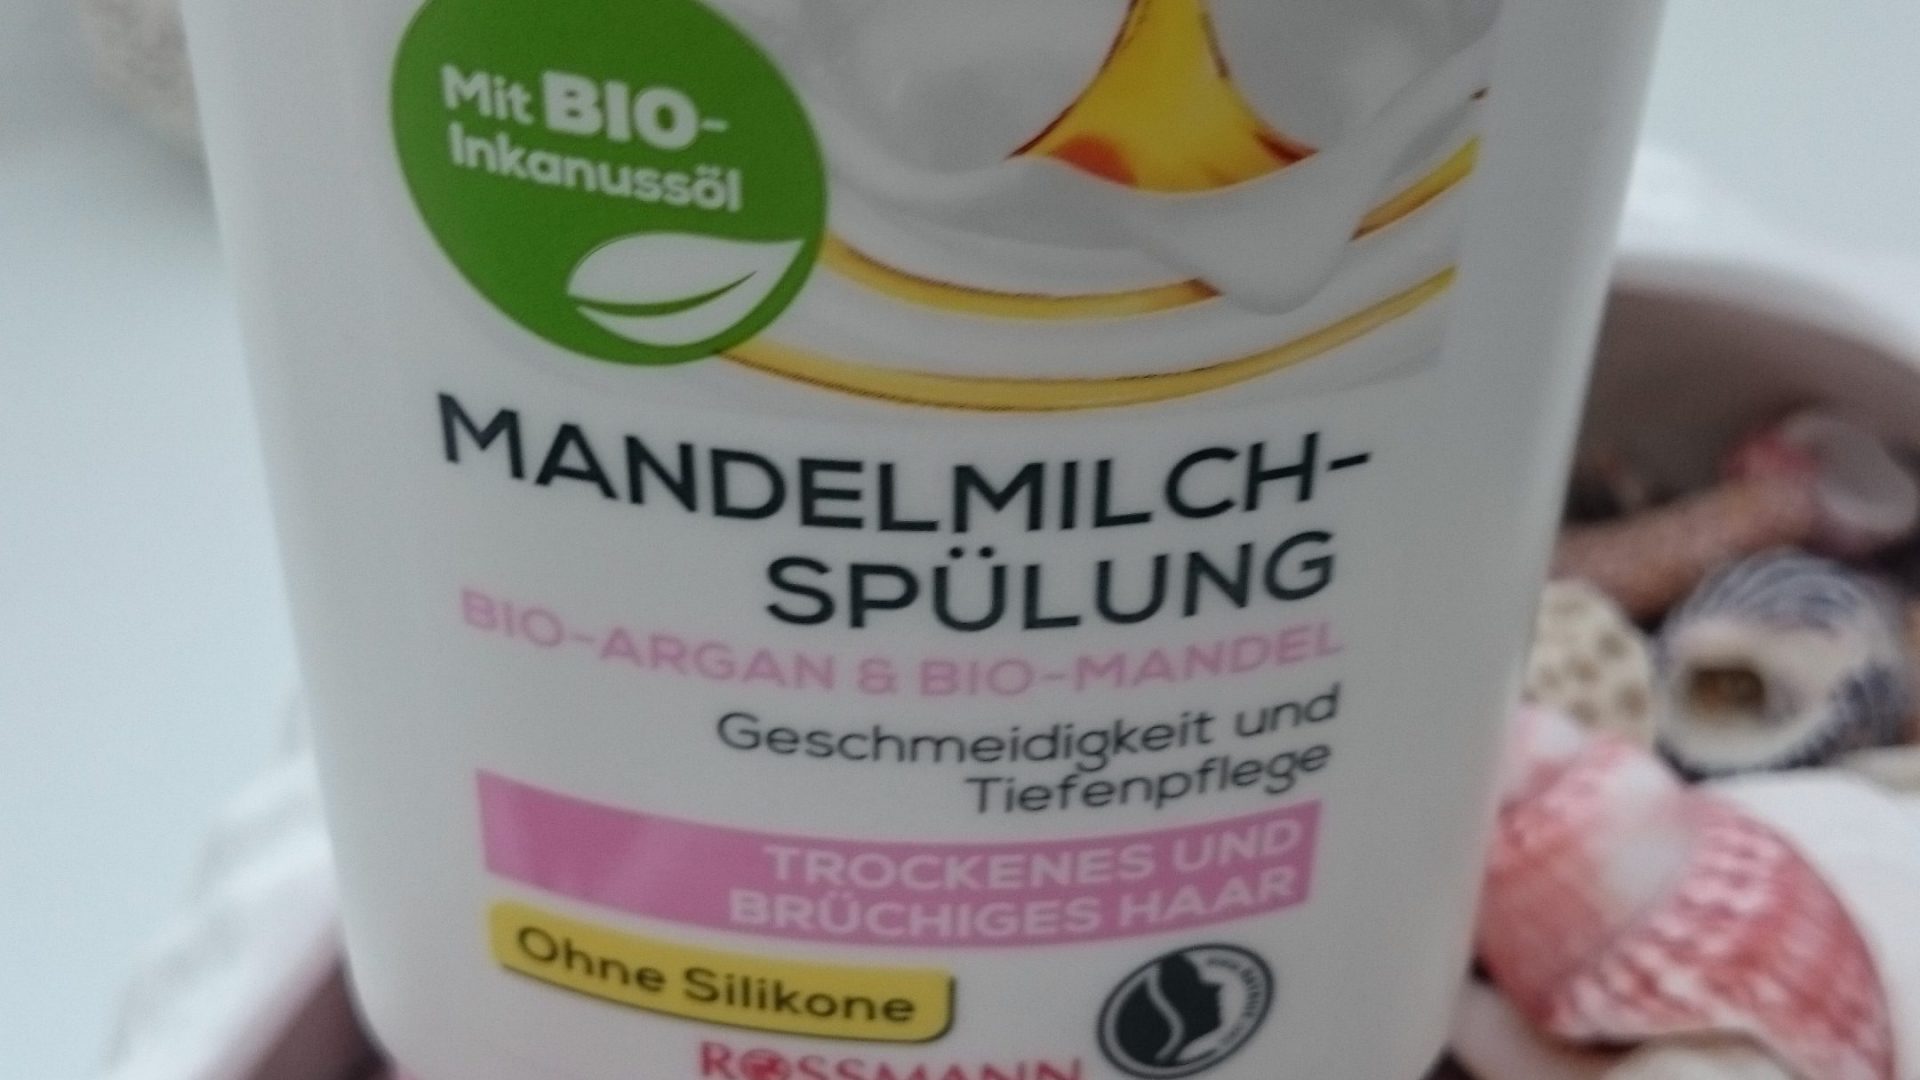 Mandelmilch Spulung Mit Bio Inkanussol Von Alterra Naturkosmetik Rossmann Bioela De